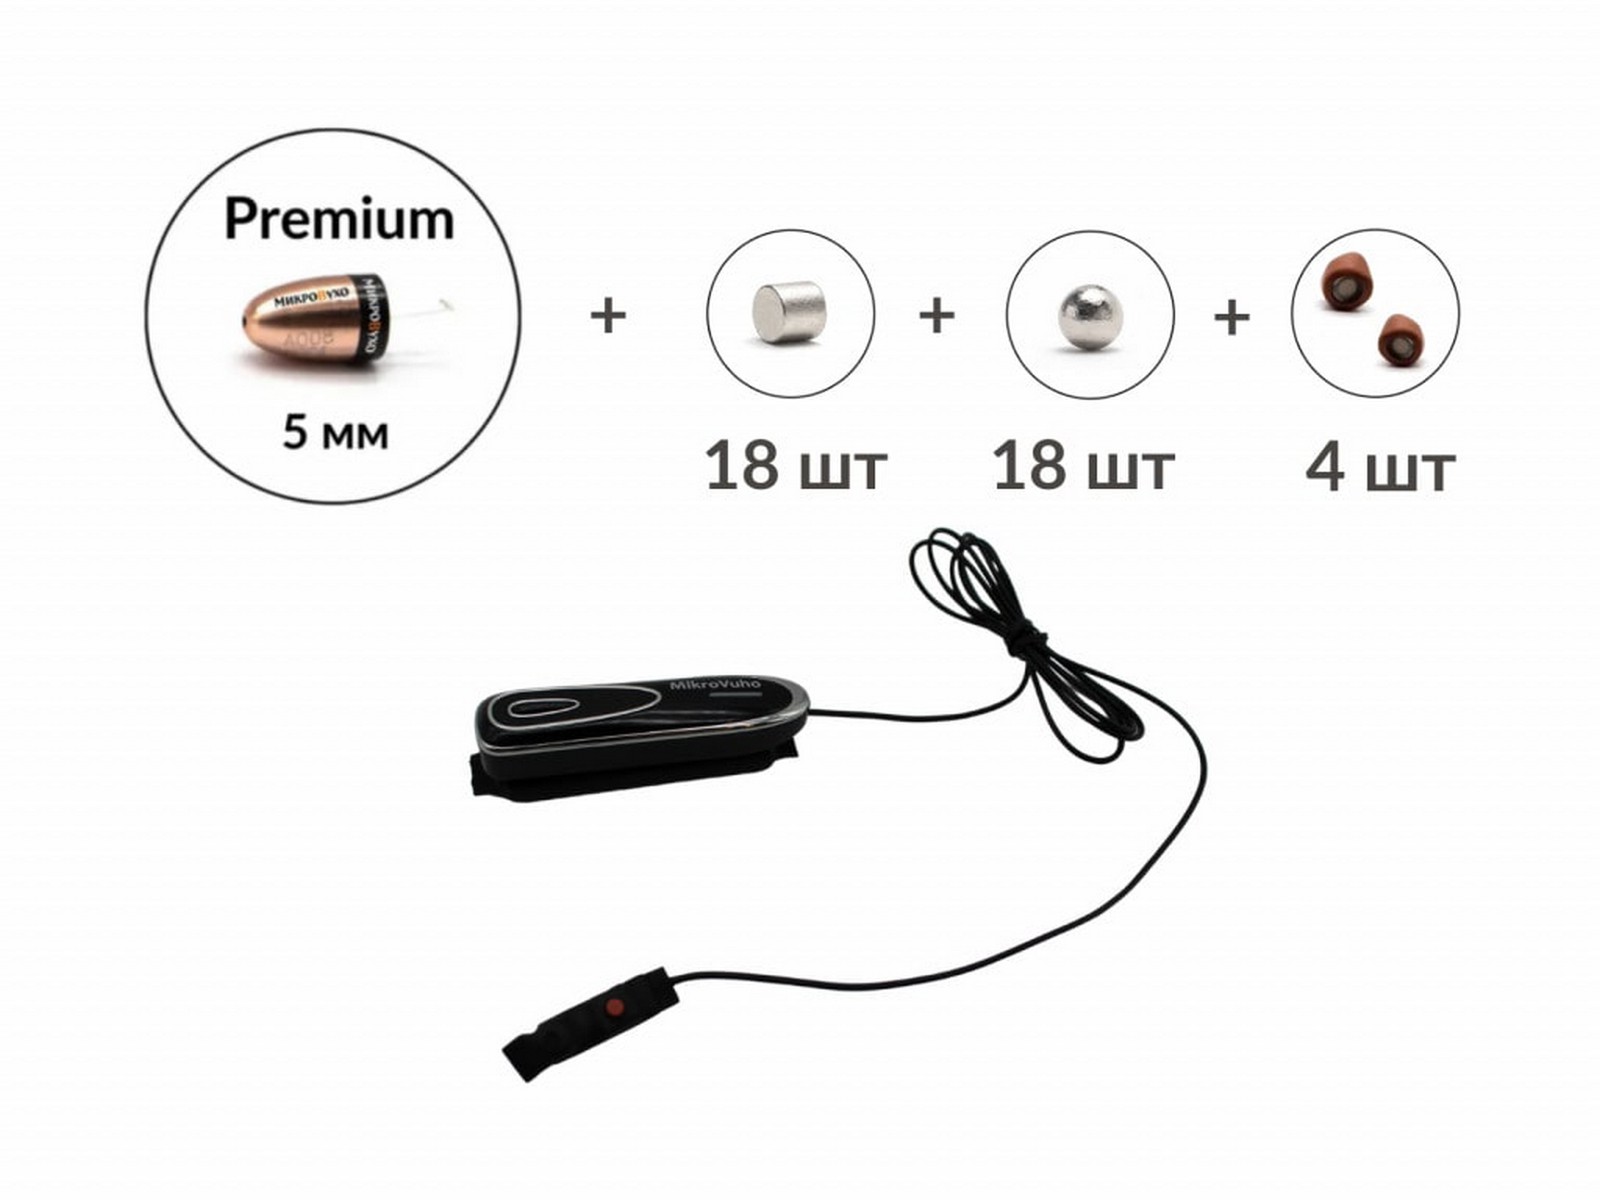 Универсальная гарнитура Bluetooth Box Premier Plus с капсулой Premium и магнитами 2 мм - изображение 16